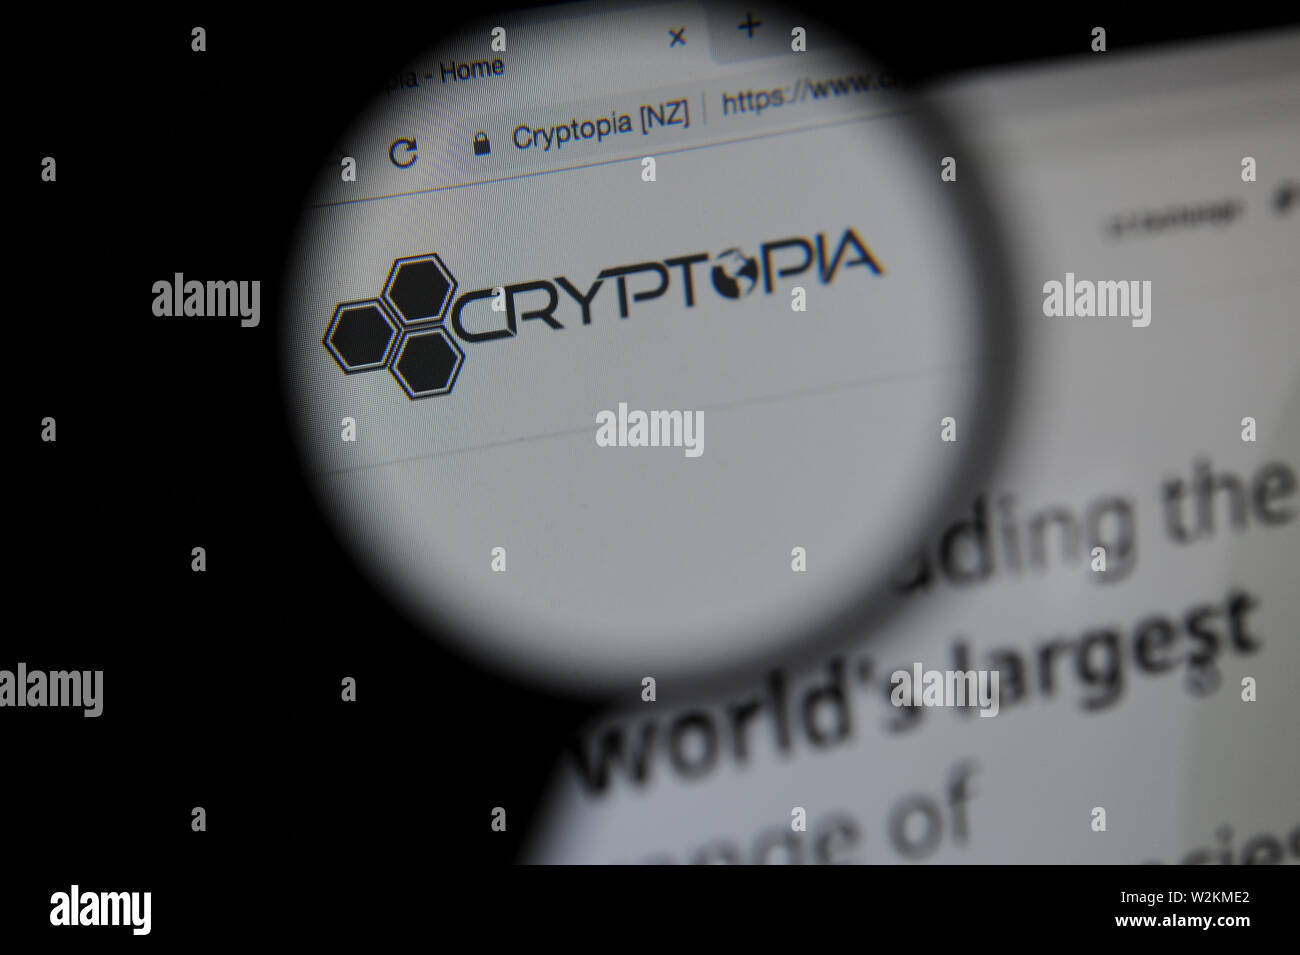 La Nueva Zelandia cryptocurrency Cryptopia exchange Foto de stock